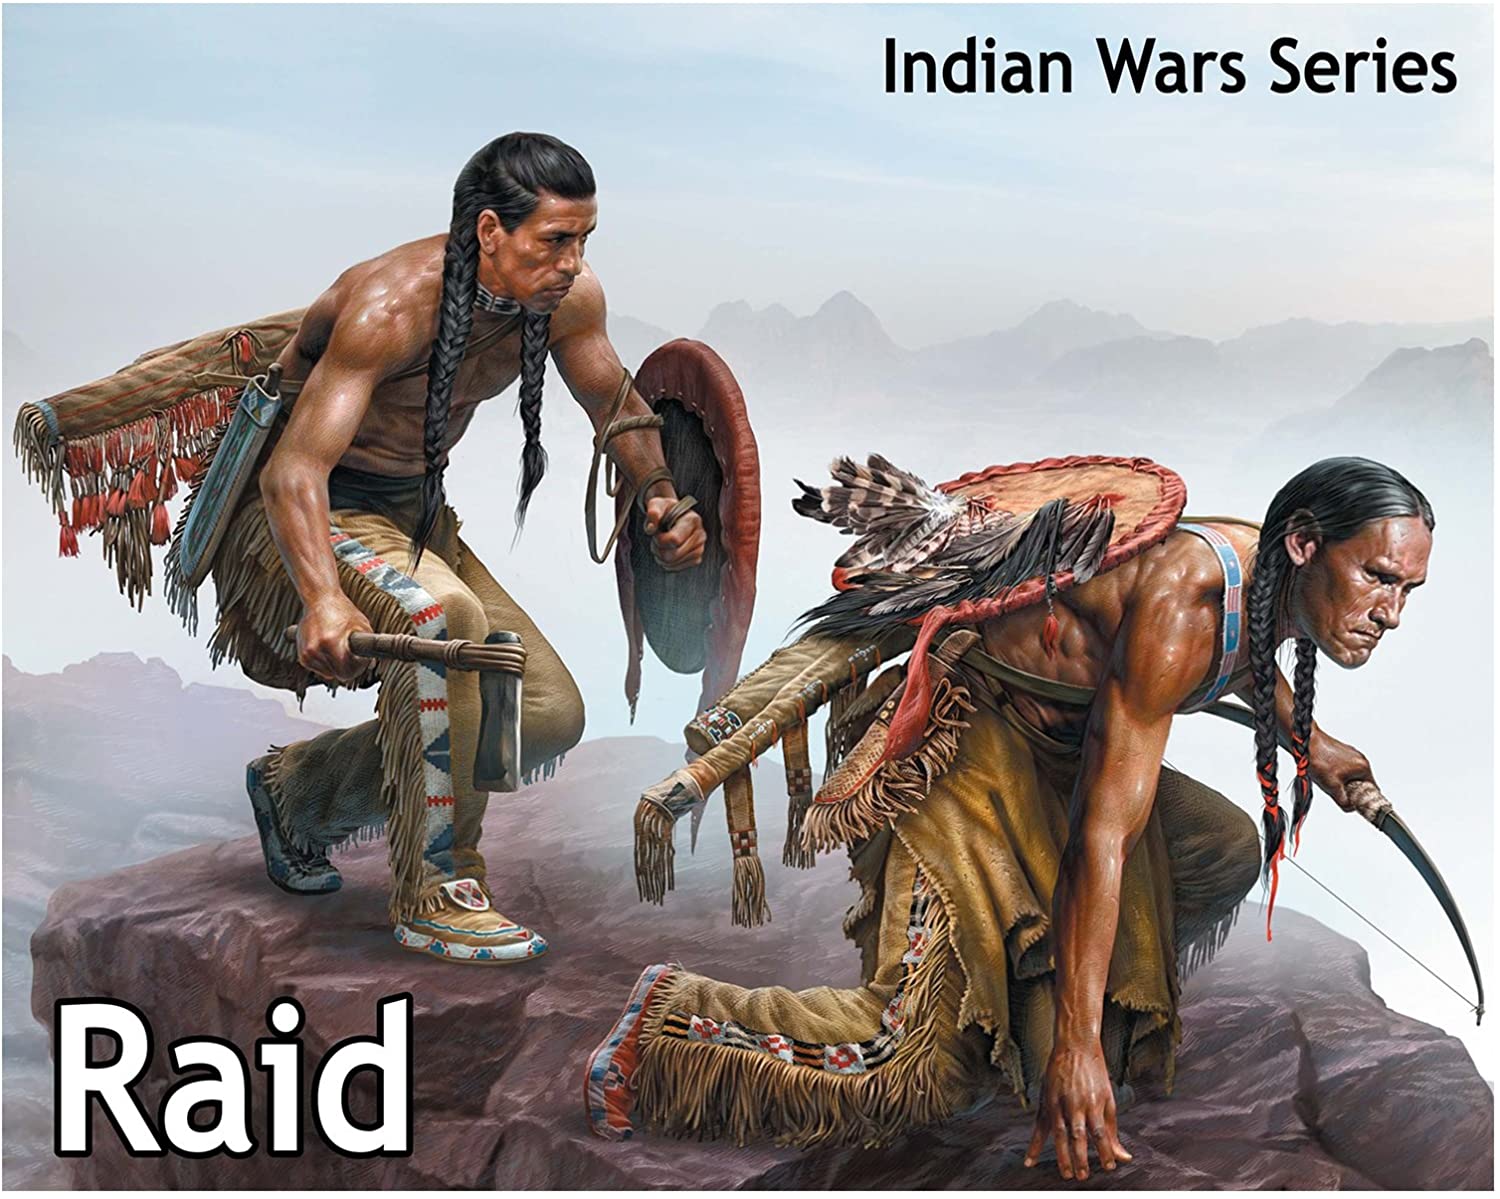 Masterbox 1/35 Figure "Raid" Indian Wars Series